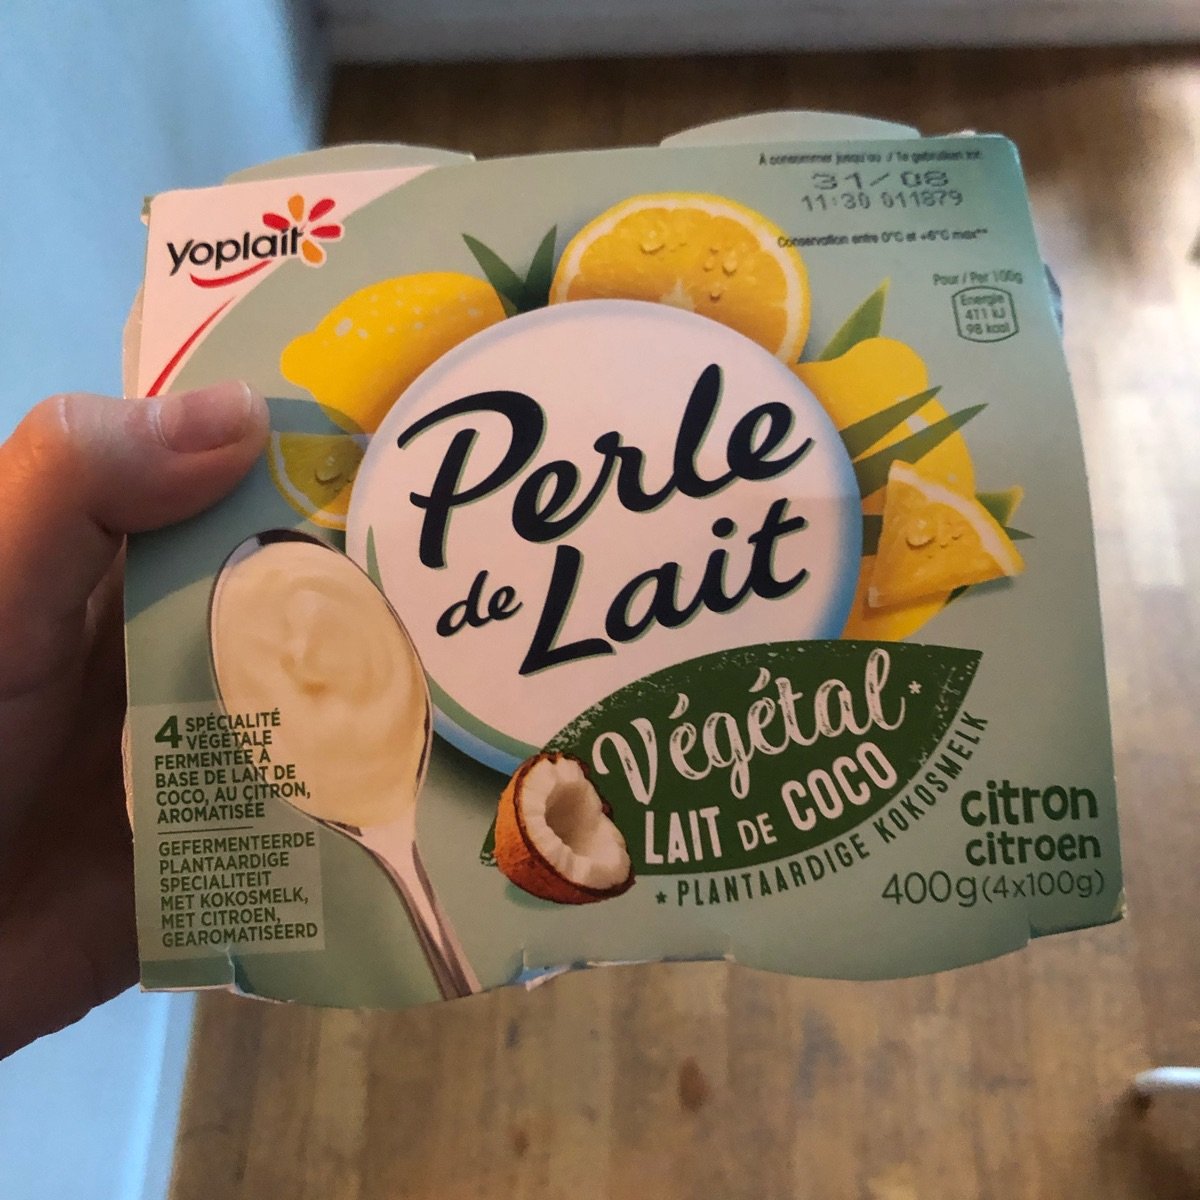 YOPLAIT PERLE DE LAIT citron